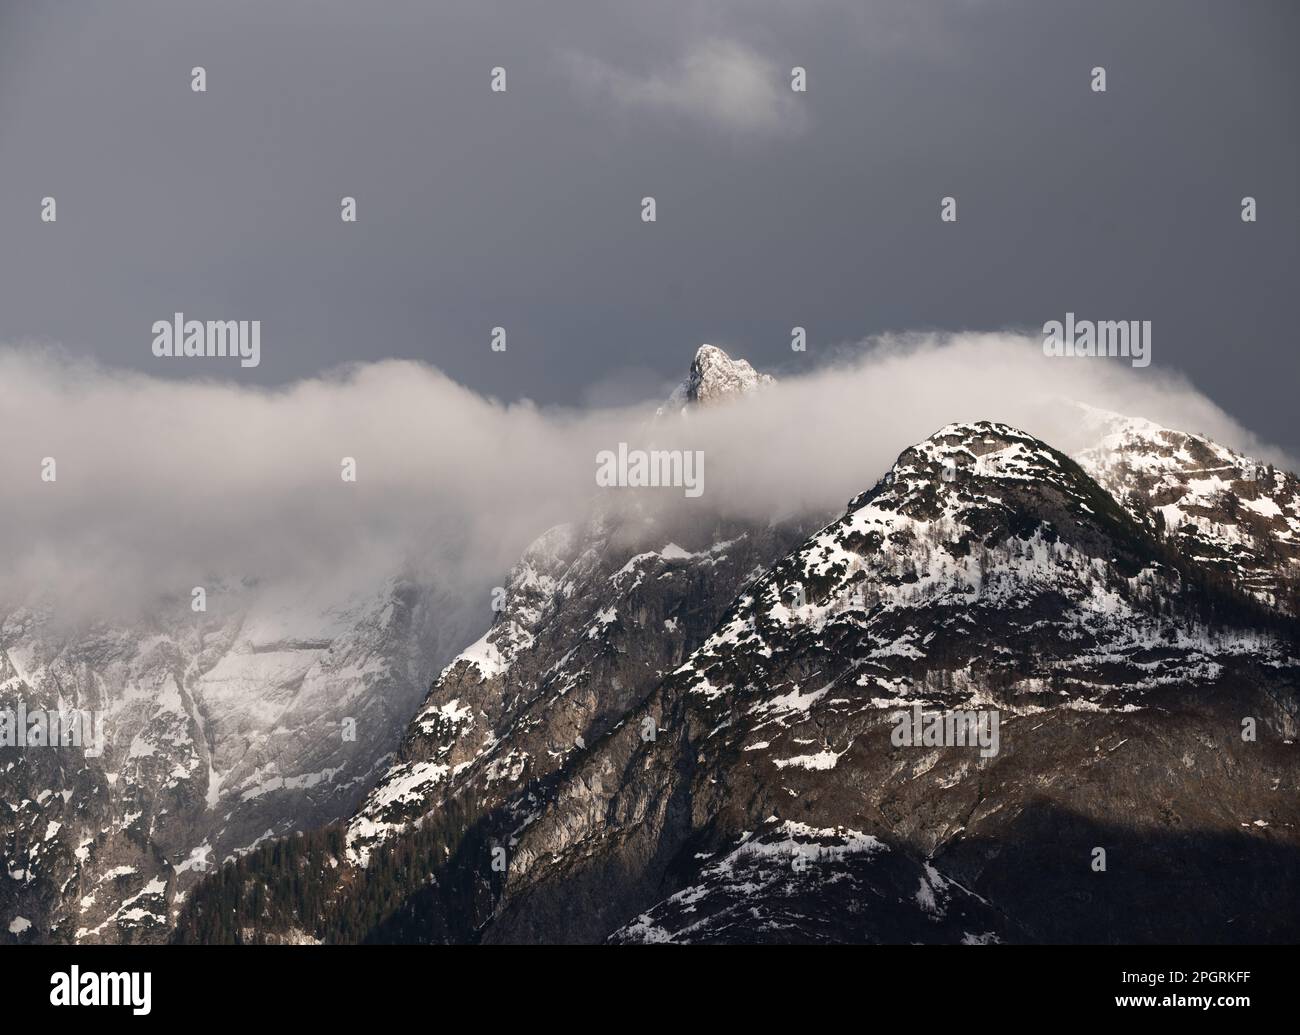 un bello scorcio invernale delle montagne delle dolomiti Foto de stock